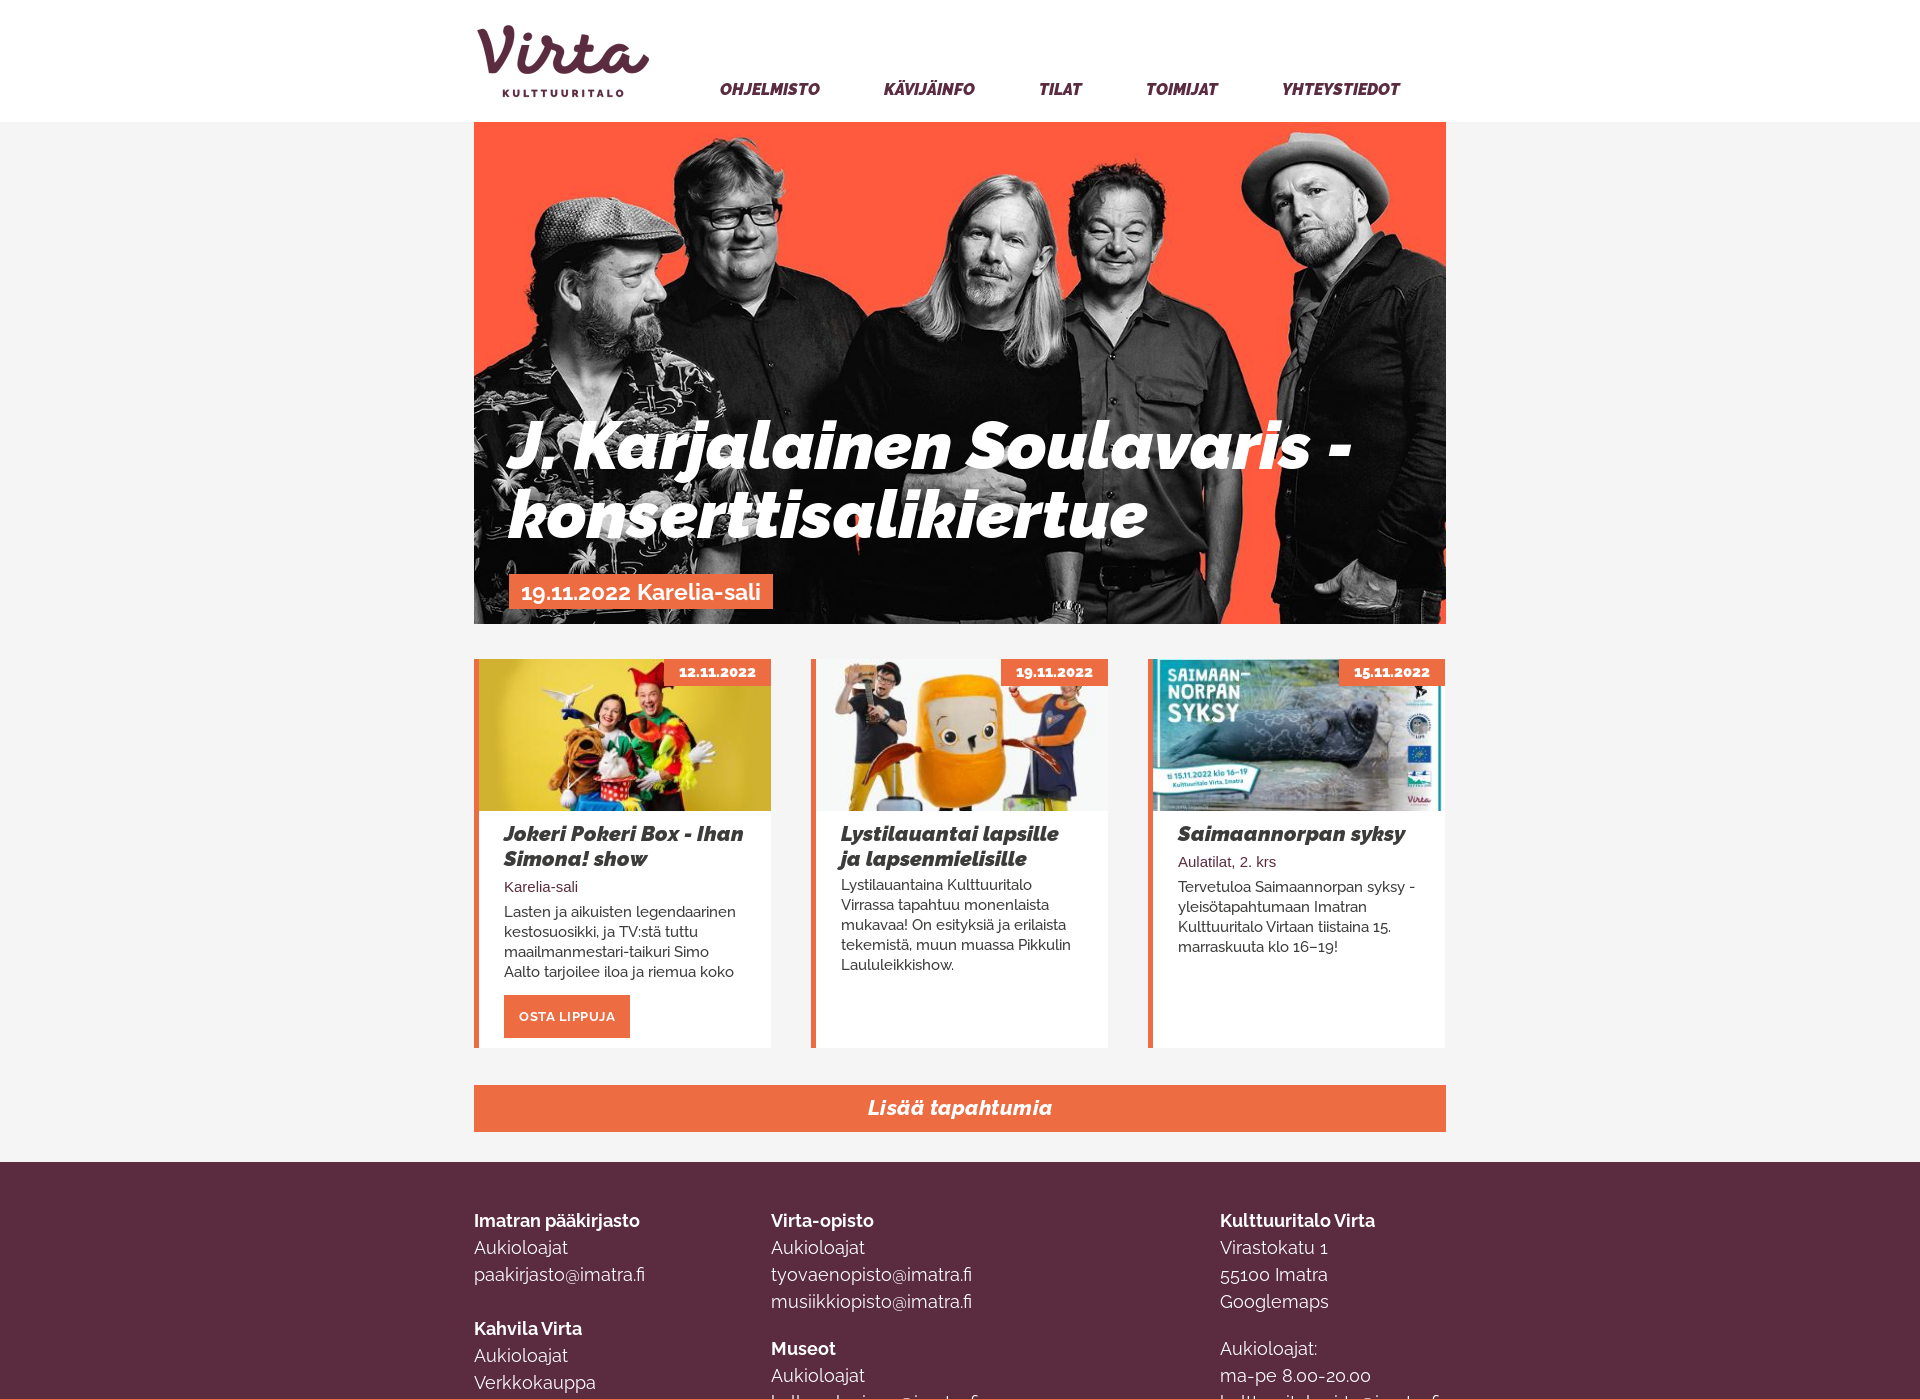 Näyttökuva kulttuuritalovirta.fi